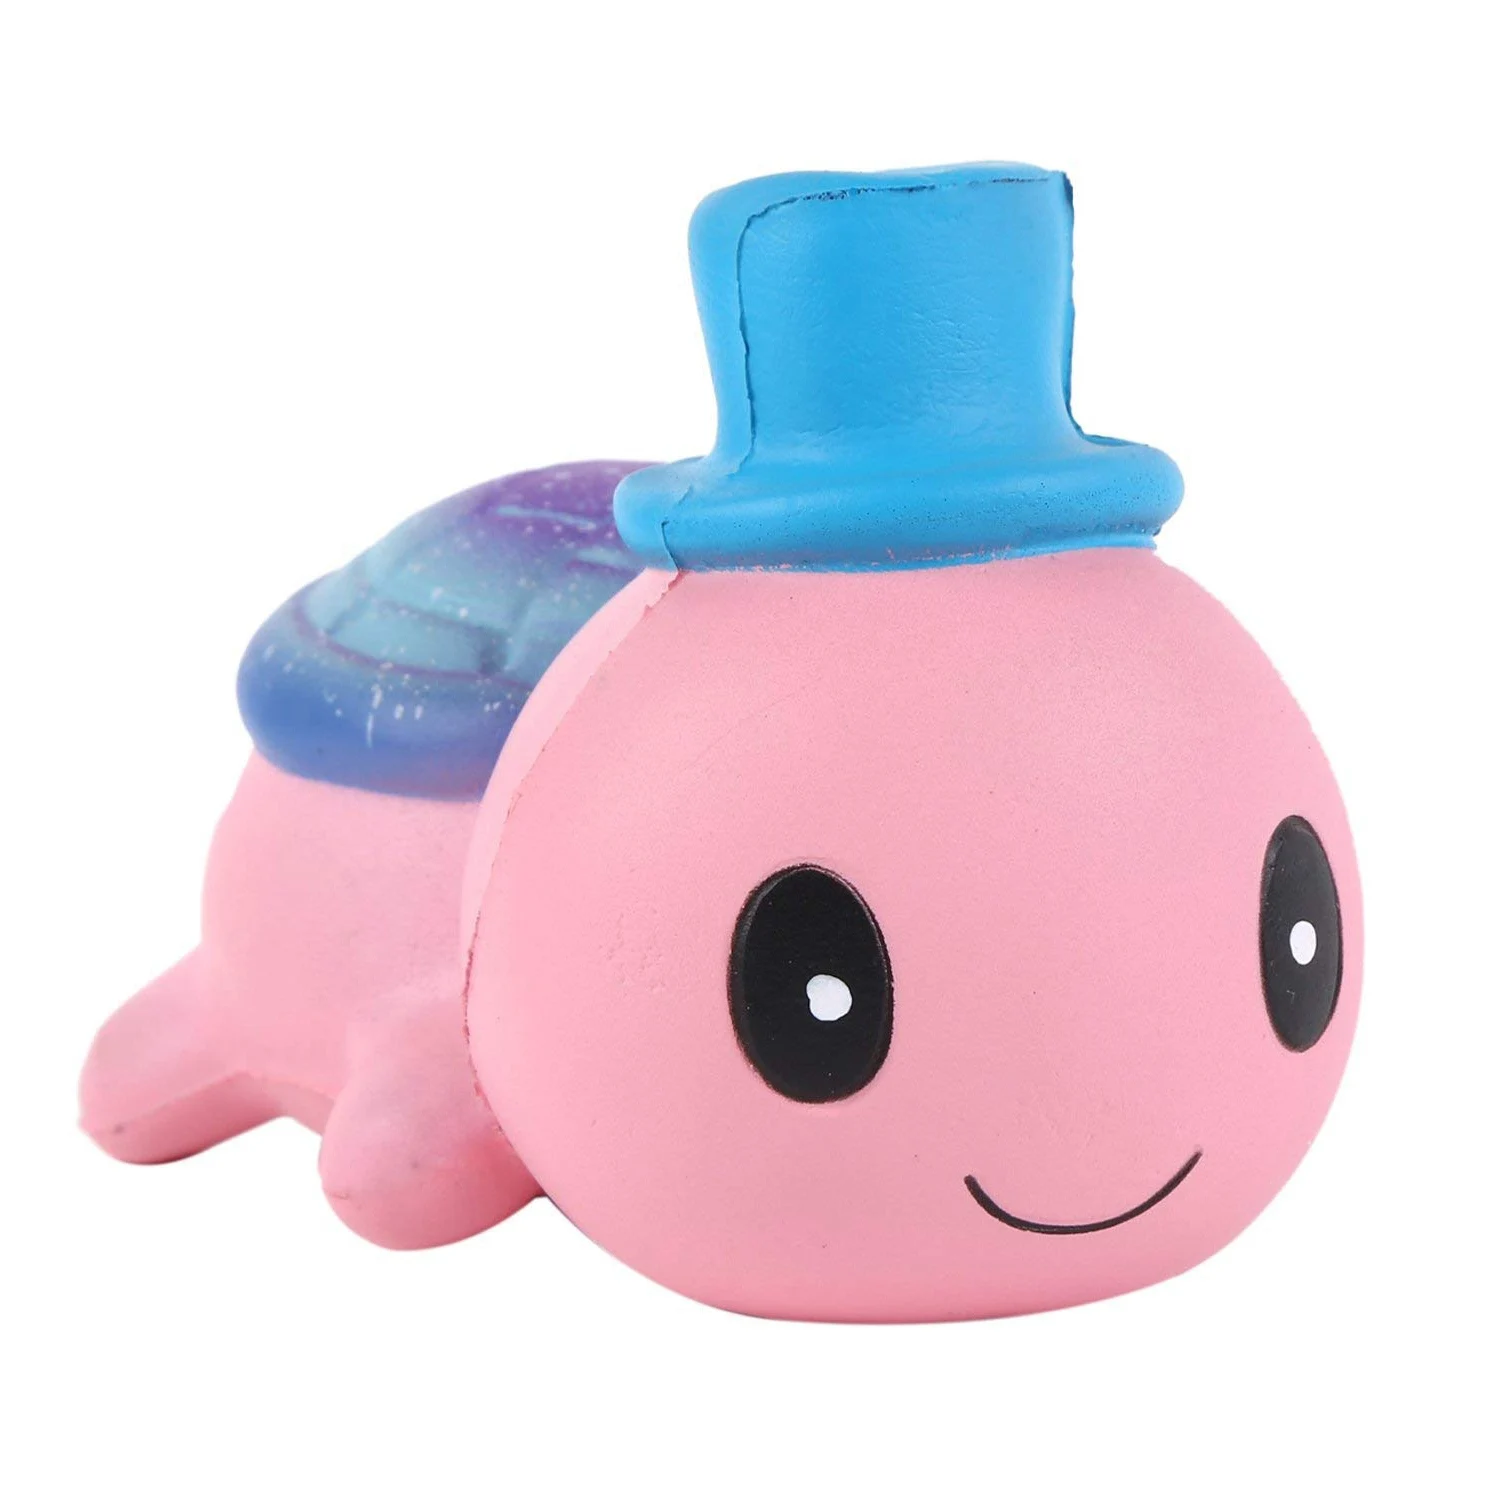 Jumbo мягкими симпатичными шапками маленькая черепаха Kawaii крем ароматизированные очень медленно расправляющиеся мягкие игрушки